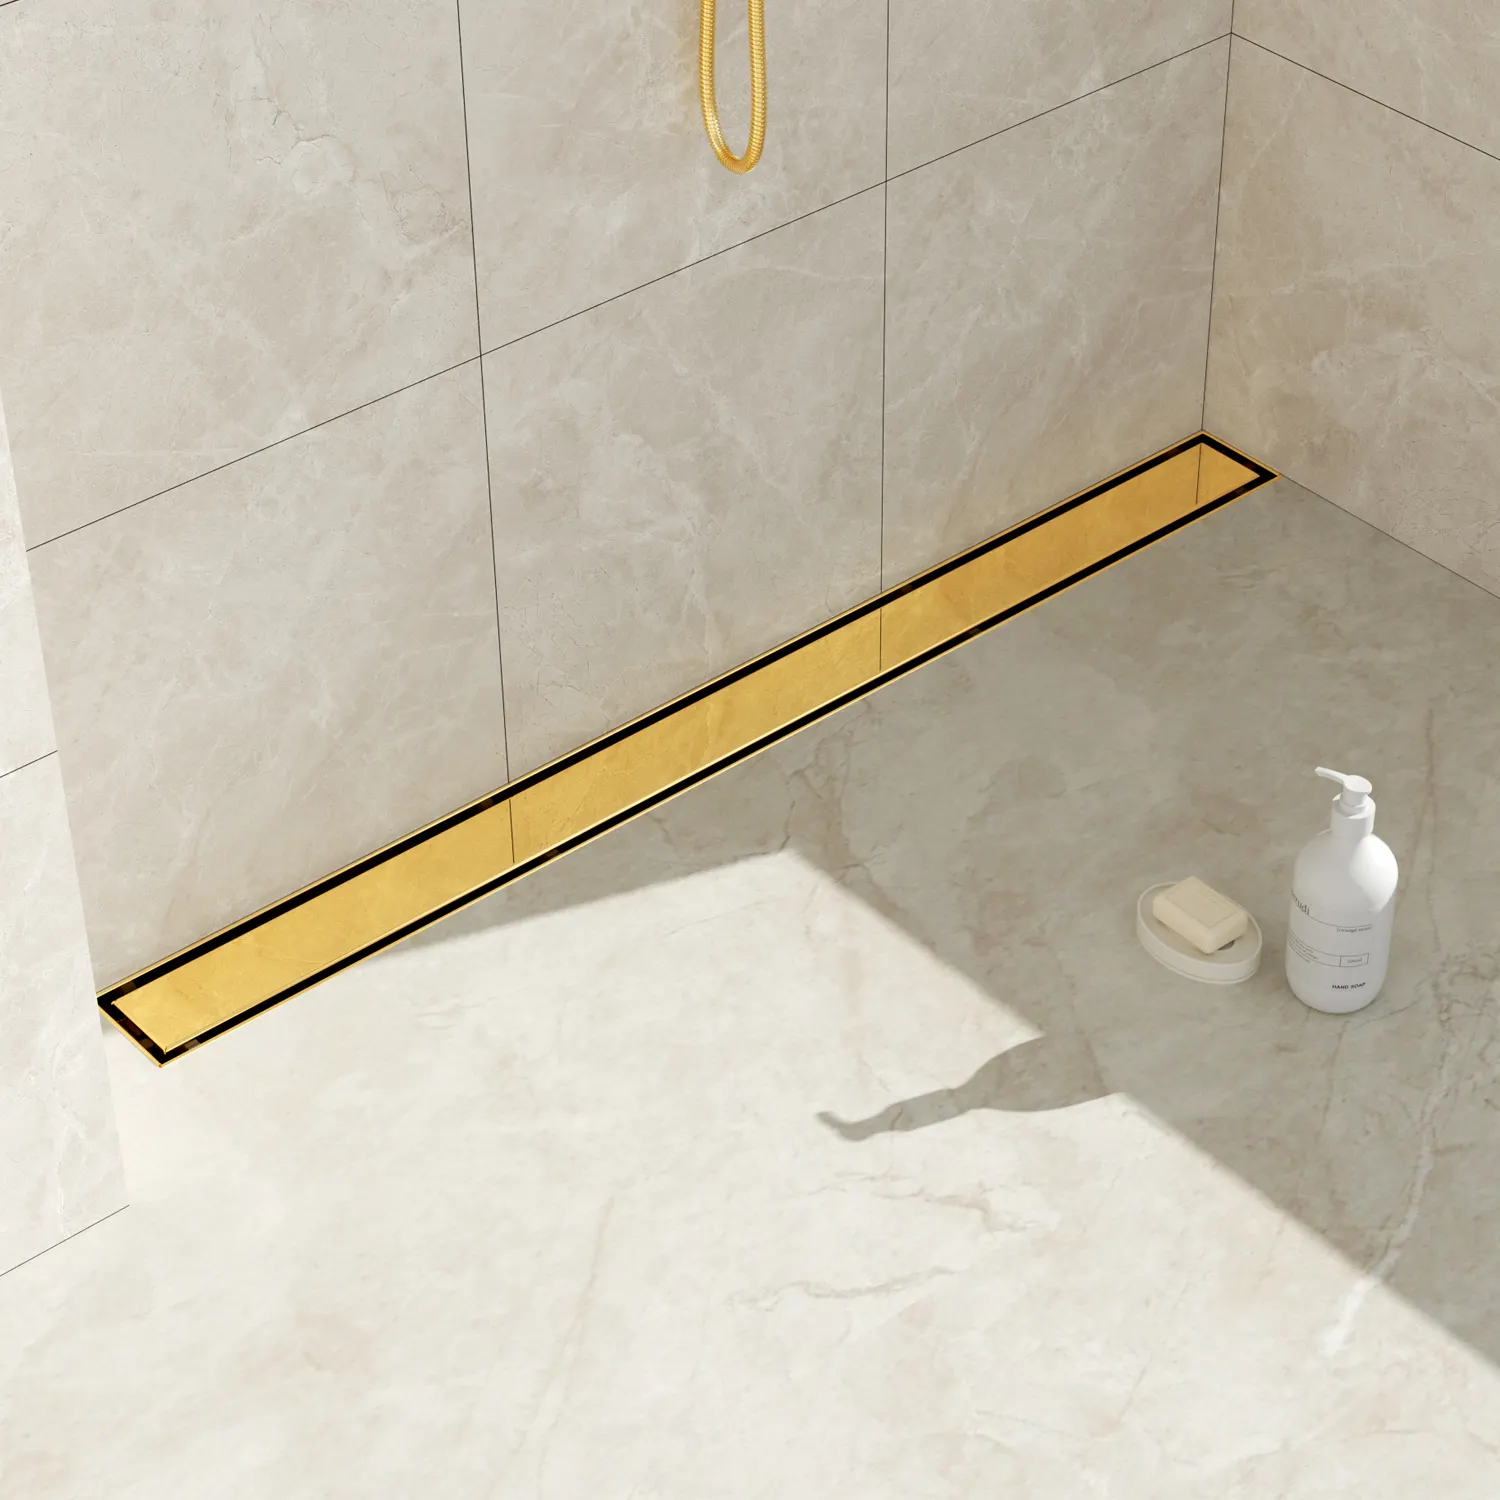 ניהול מים חלק באפשרויות ניקוז מקלחת באיכות גבוהה עם בסיס מסתובב לחדר האמבטיה שלך